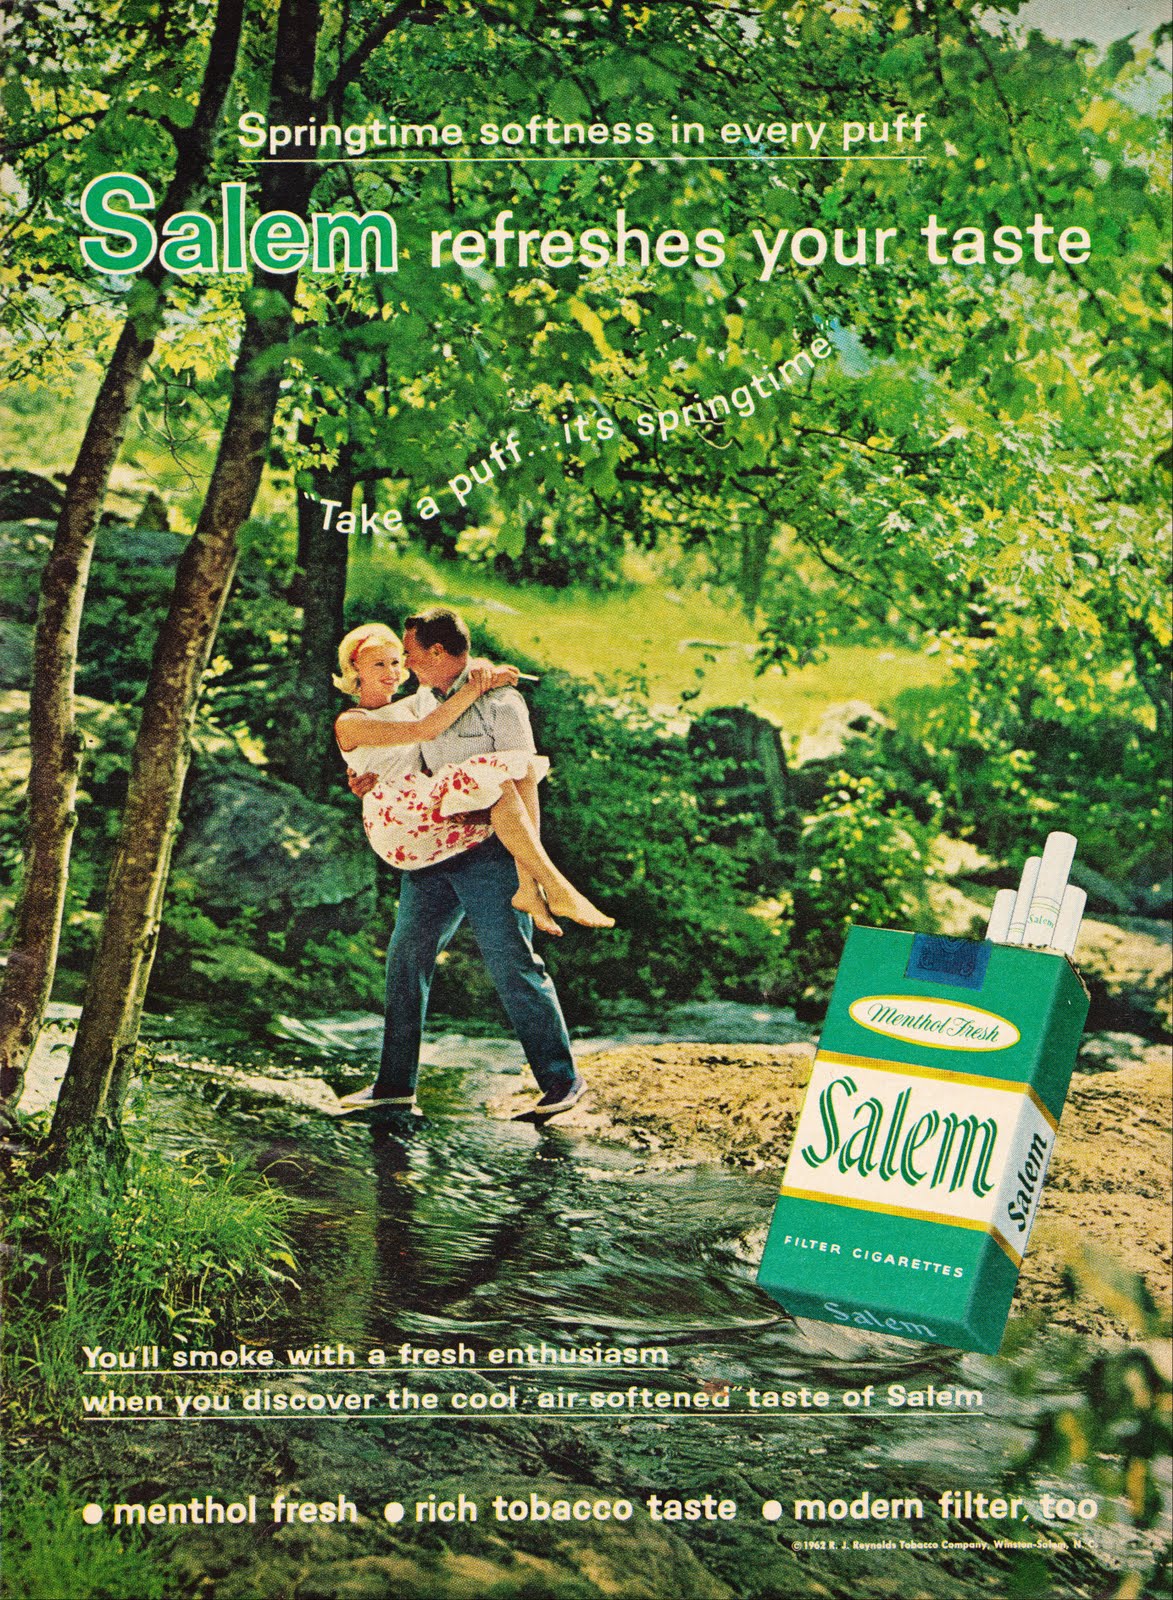 Taste Of Original Cigarettes Salem